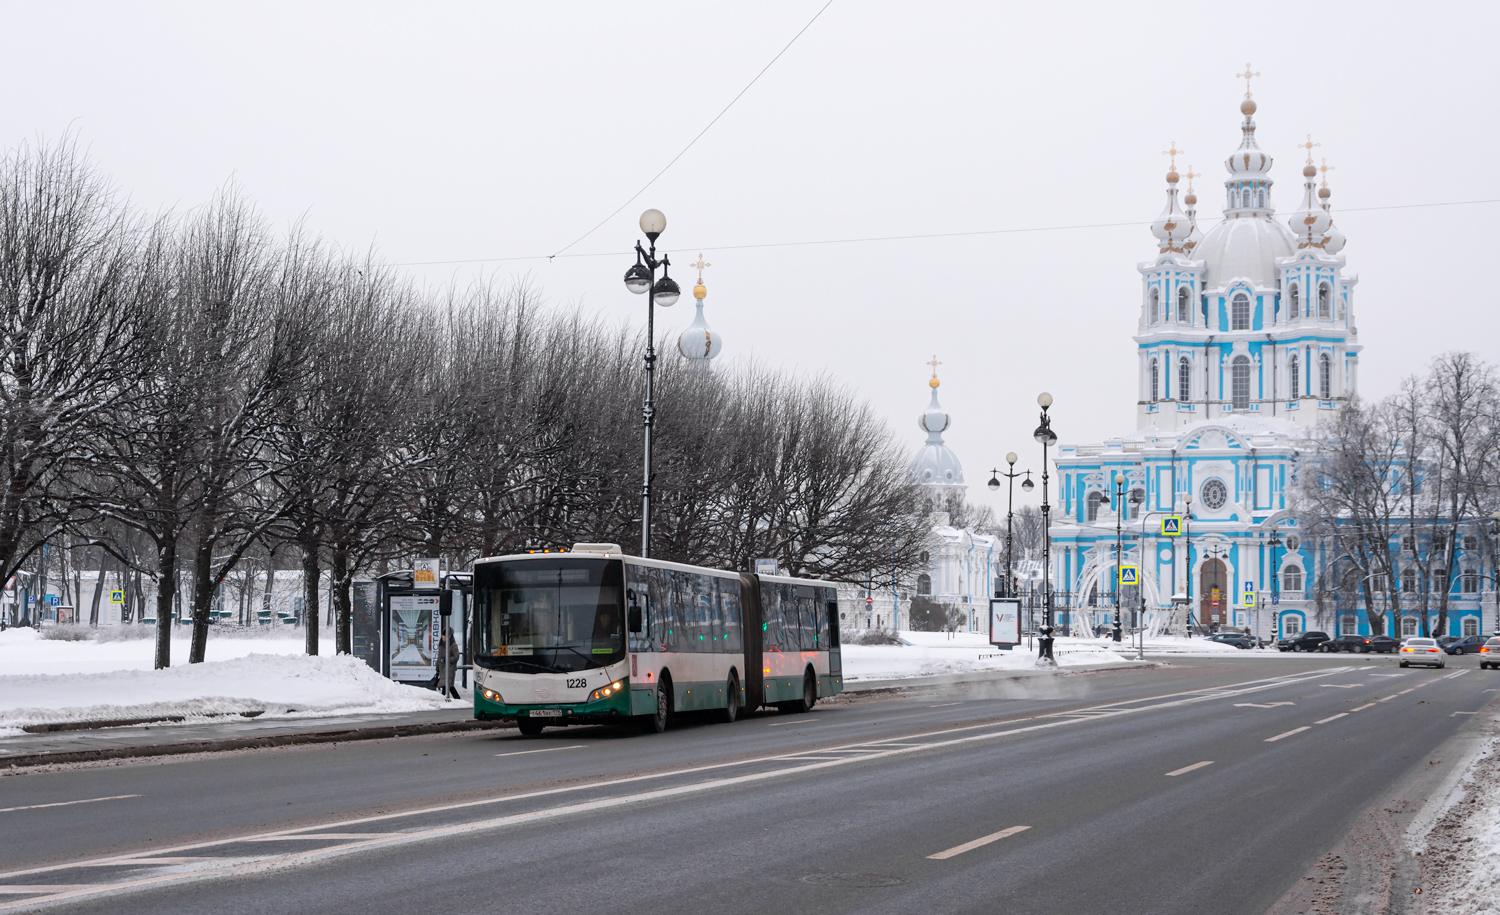 Saint Petersburg, Volgabus-6271.00 # 1228